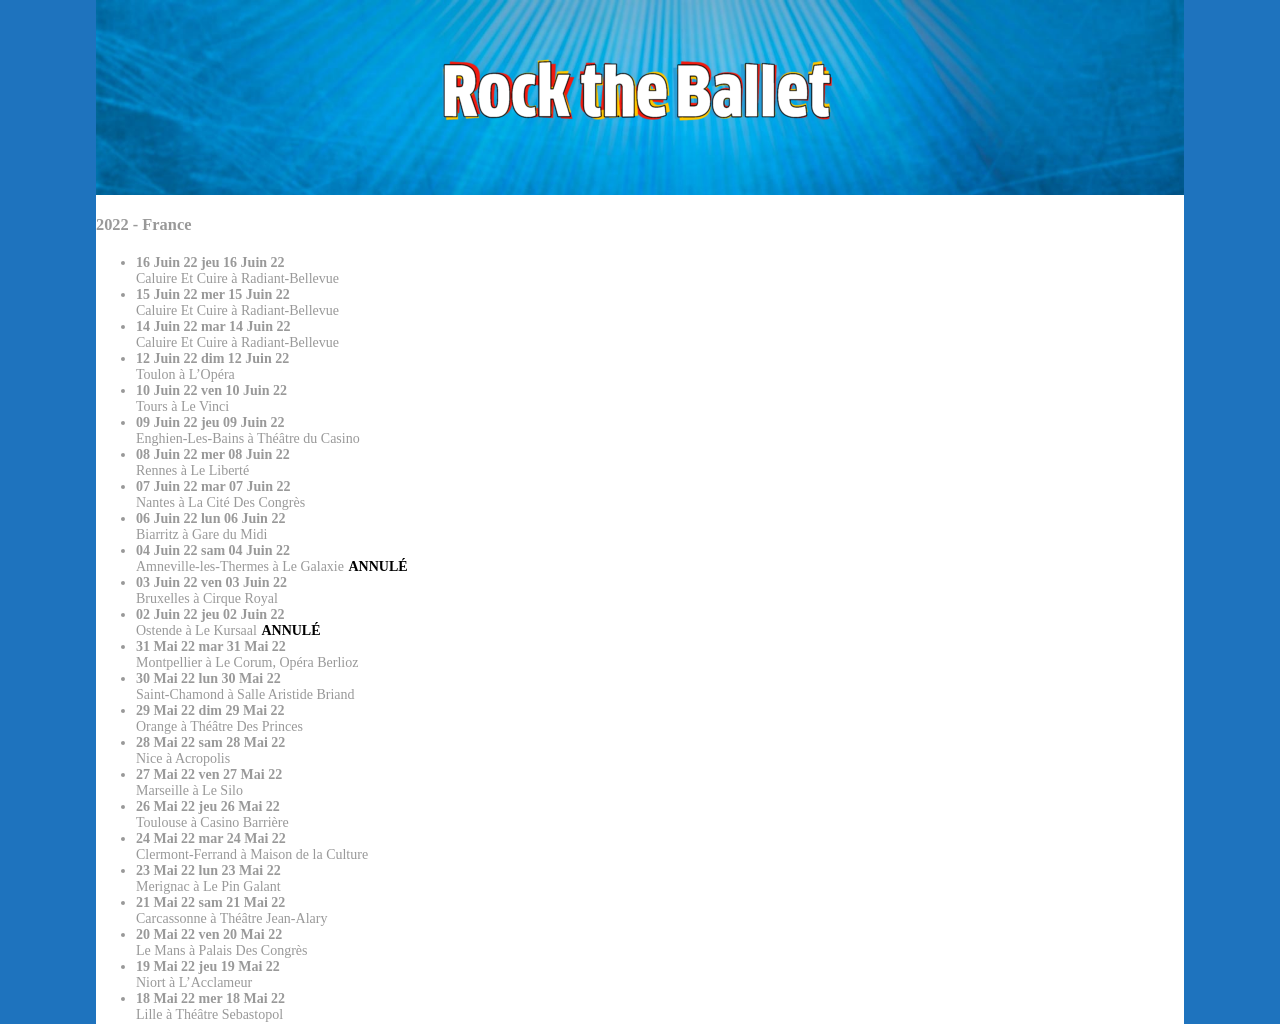 www.rock-the-ballet.fr